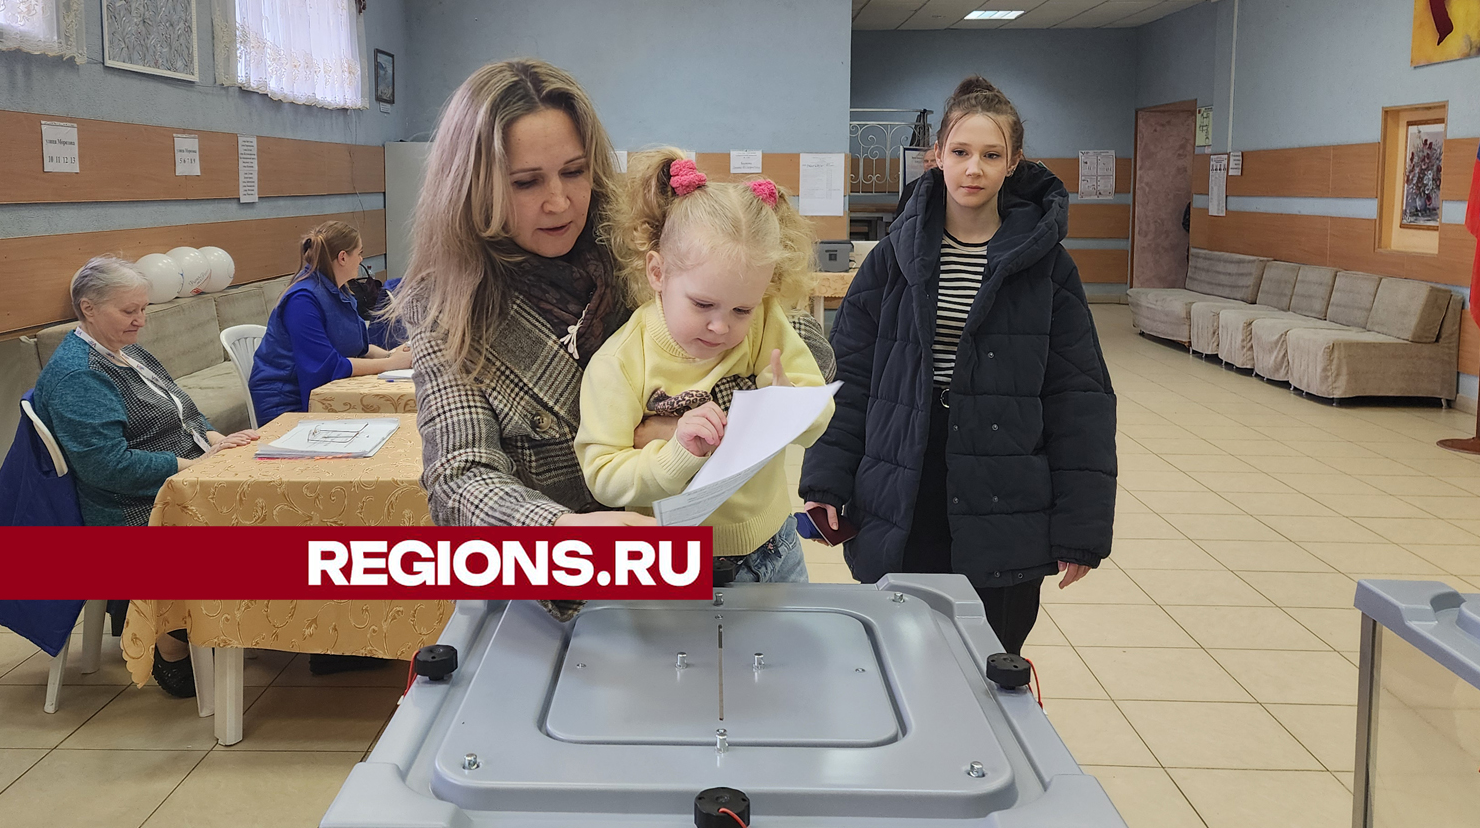 Мать пятерых детей проголосовала на выборах президента в окружении семьи